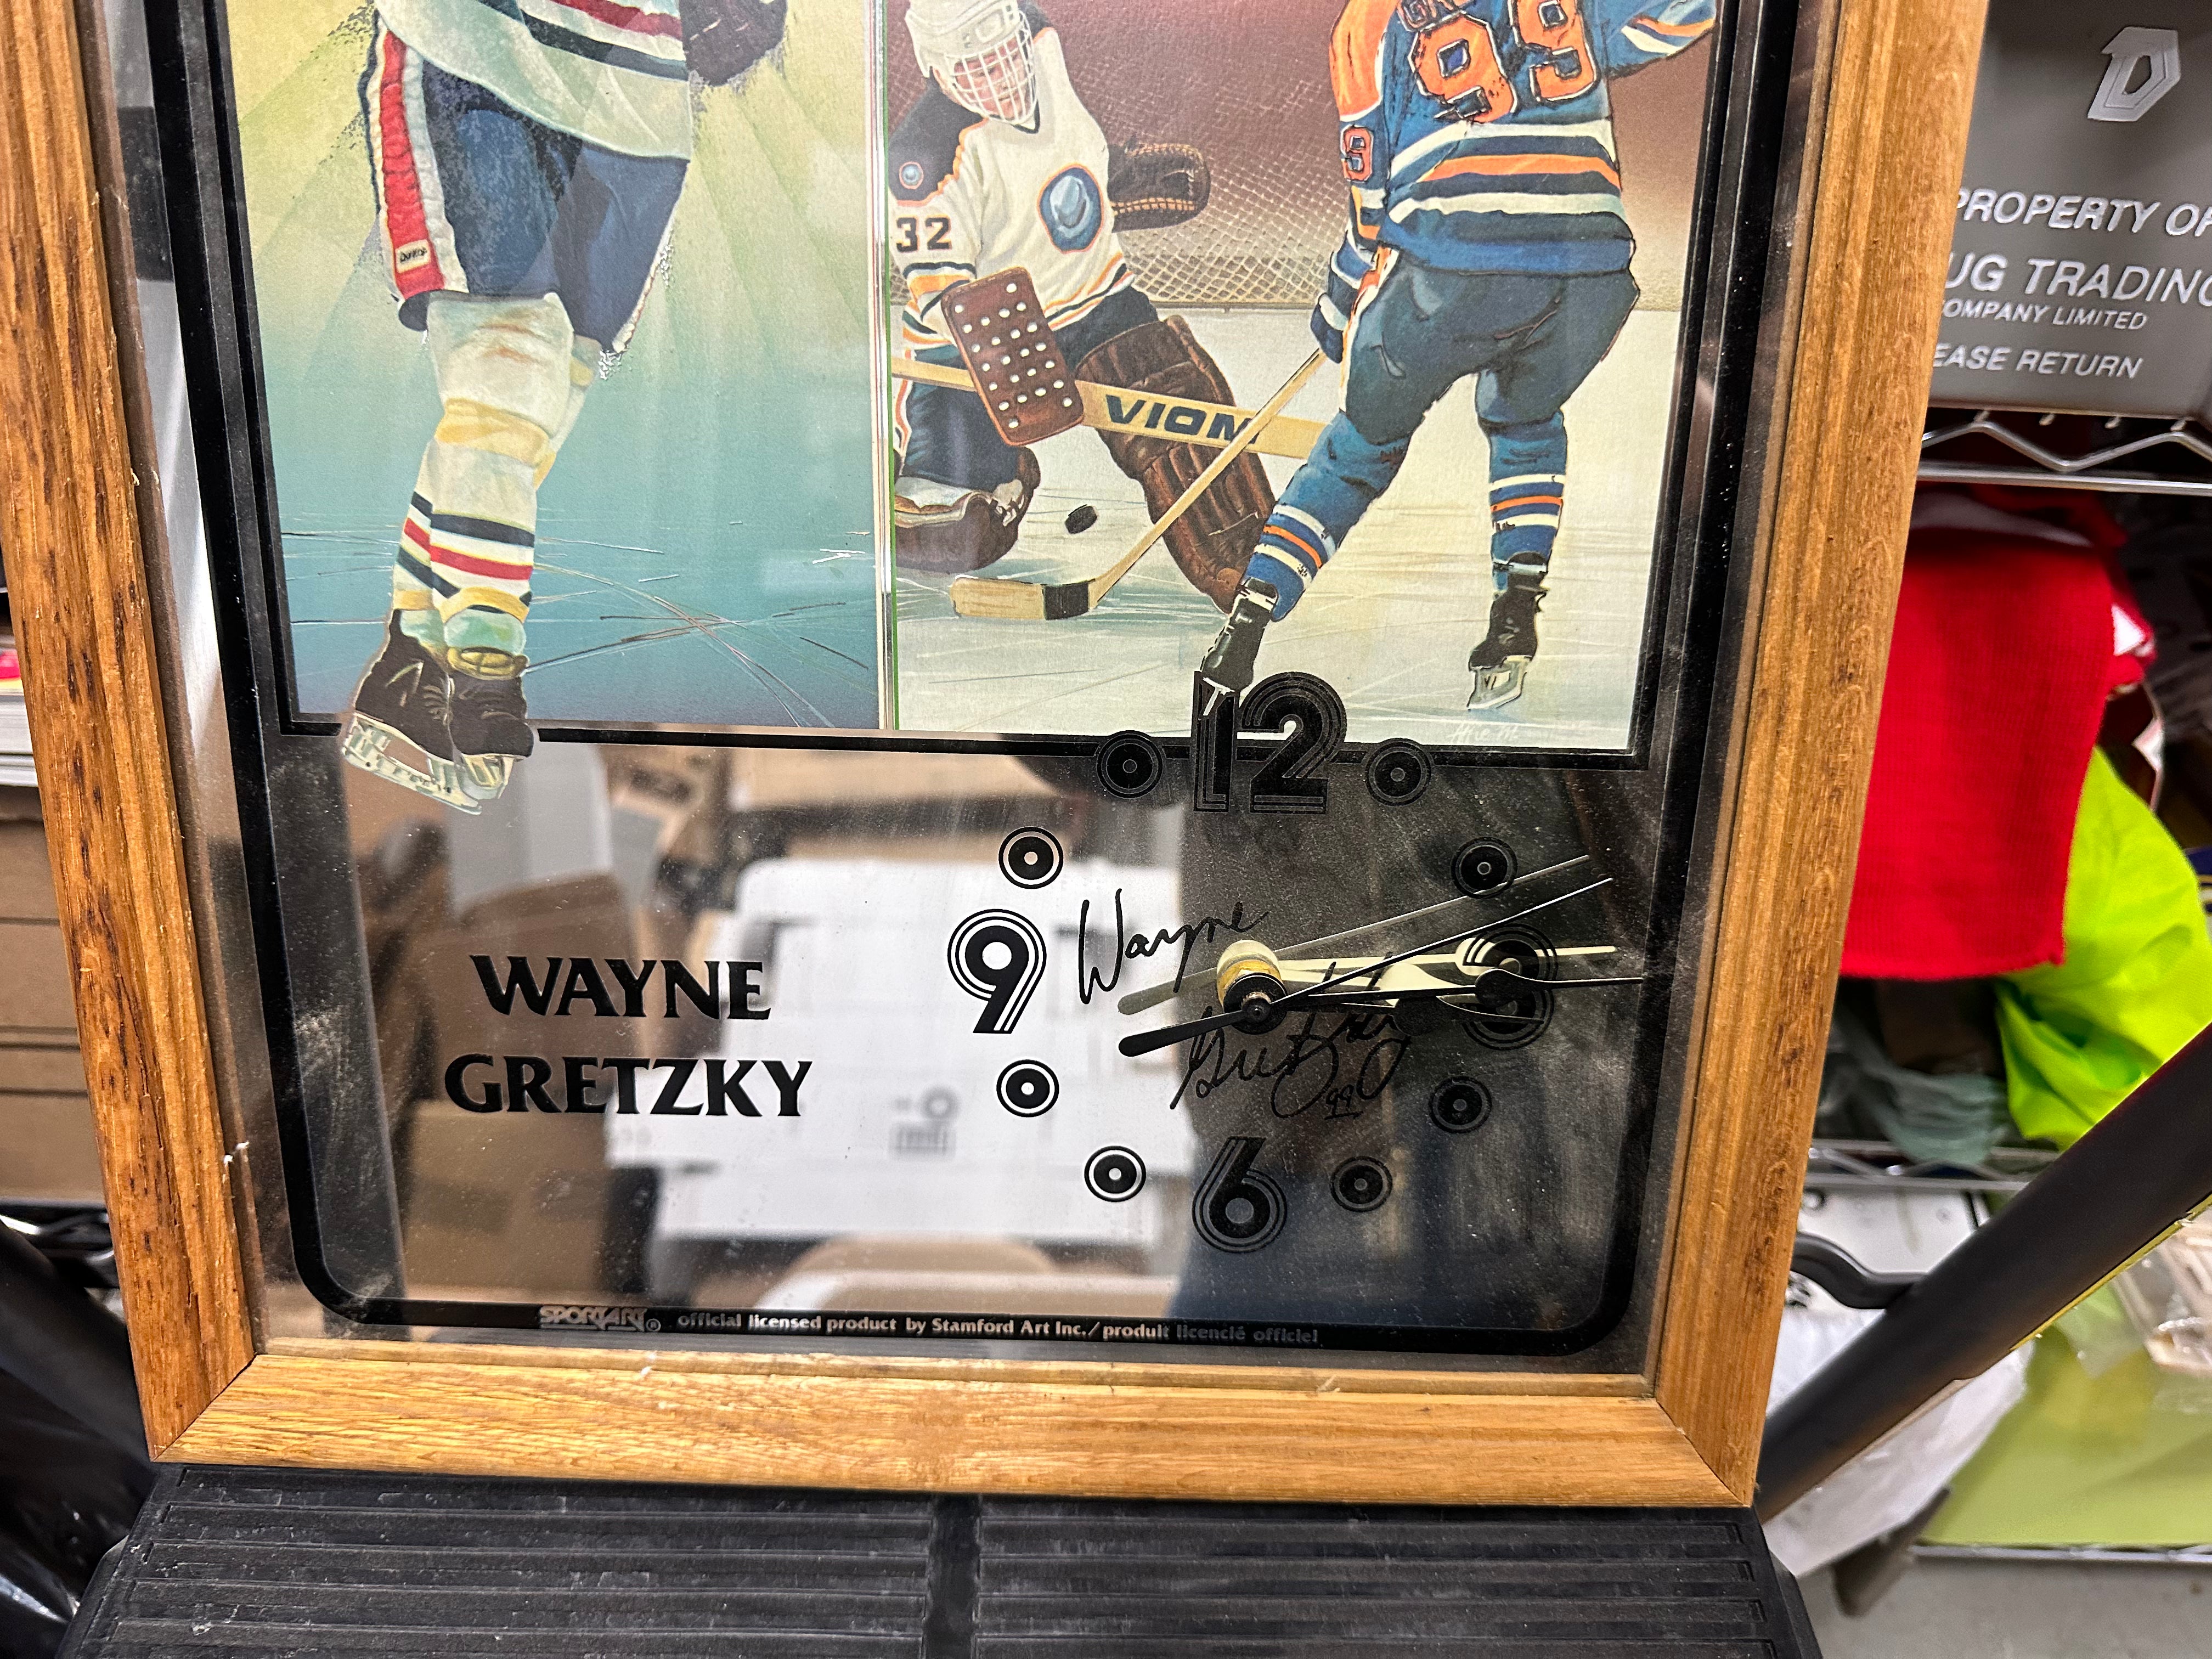 Wayne Gretzky Edmonton oilers hockey vintage mirror clock 1980s